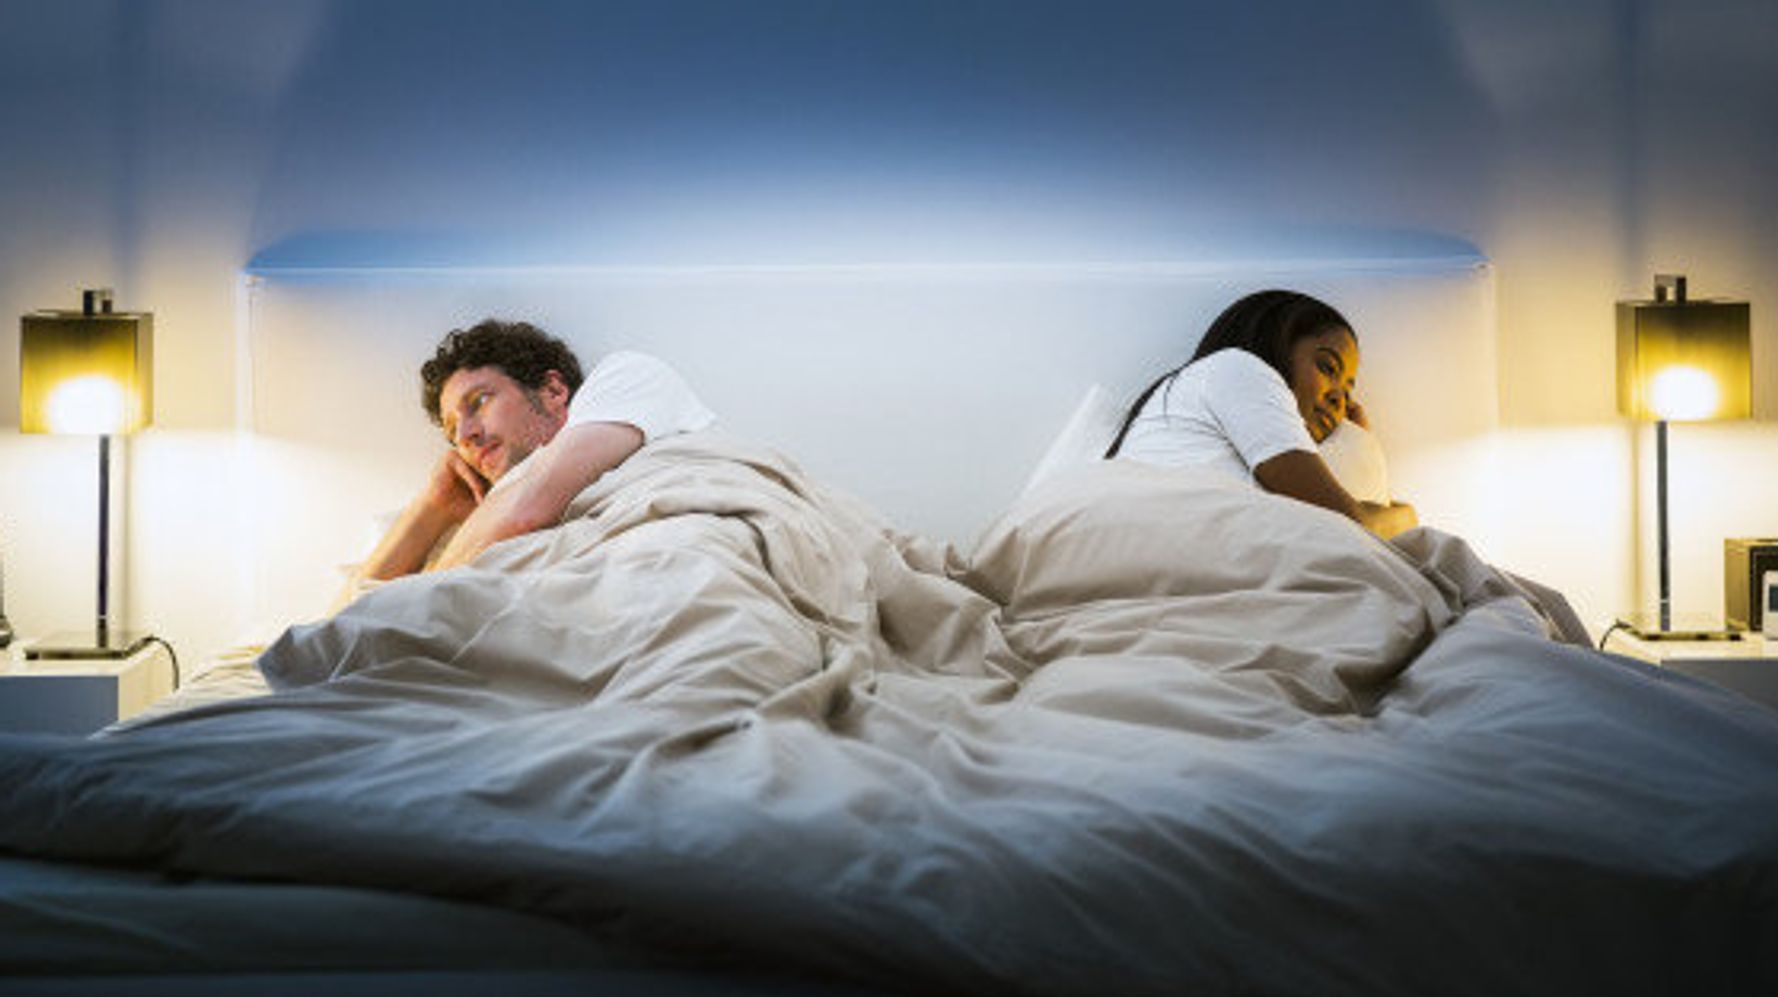 7 Problemes Auxquels Sont Confrontes Tous Les Couples Selon Les Therapeutes Le Huffington Post Life